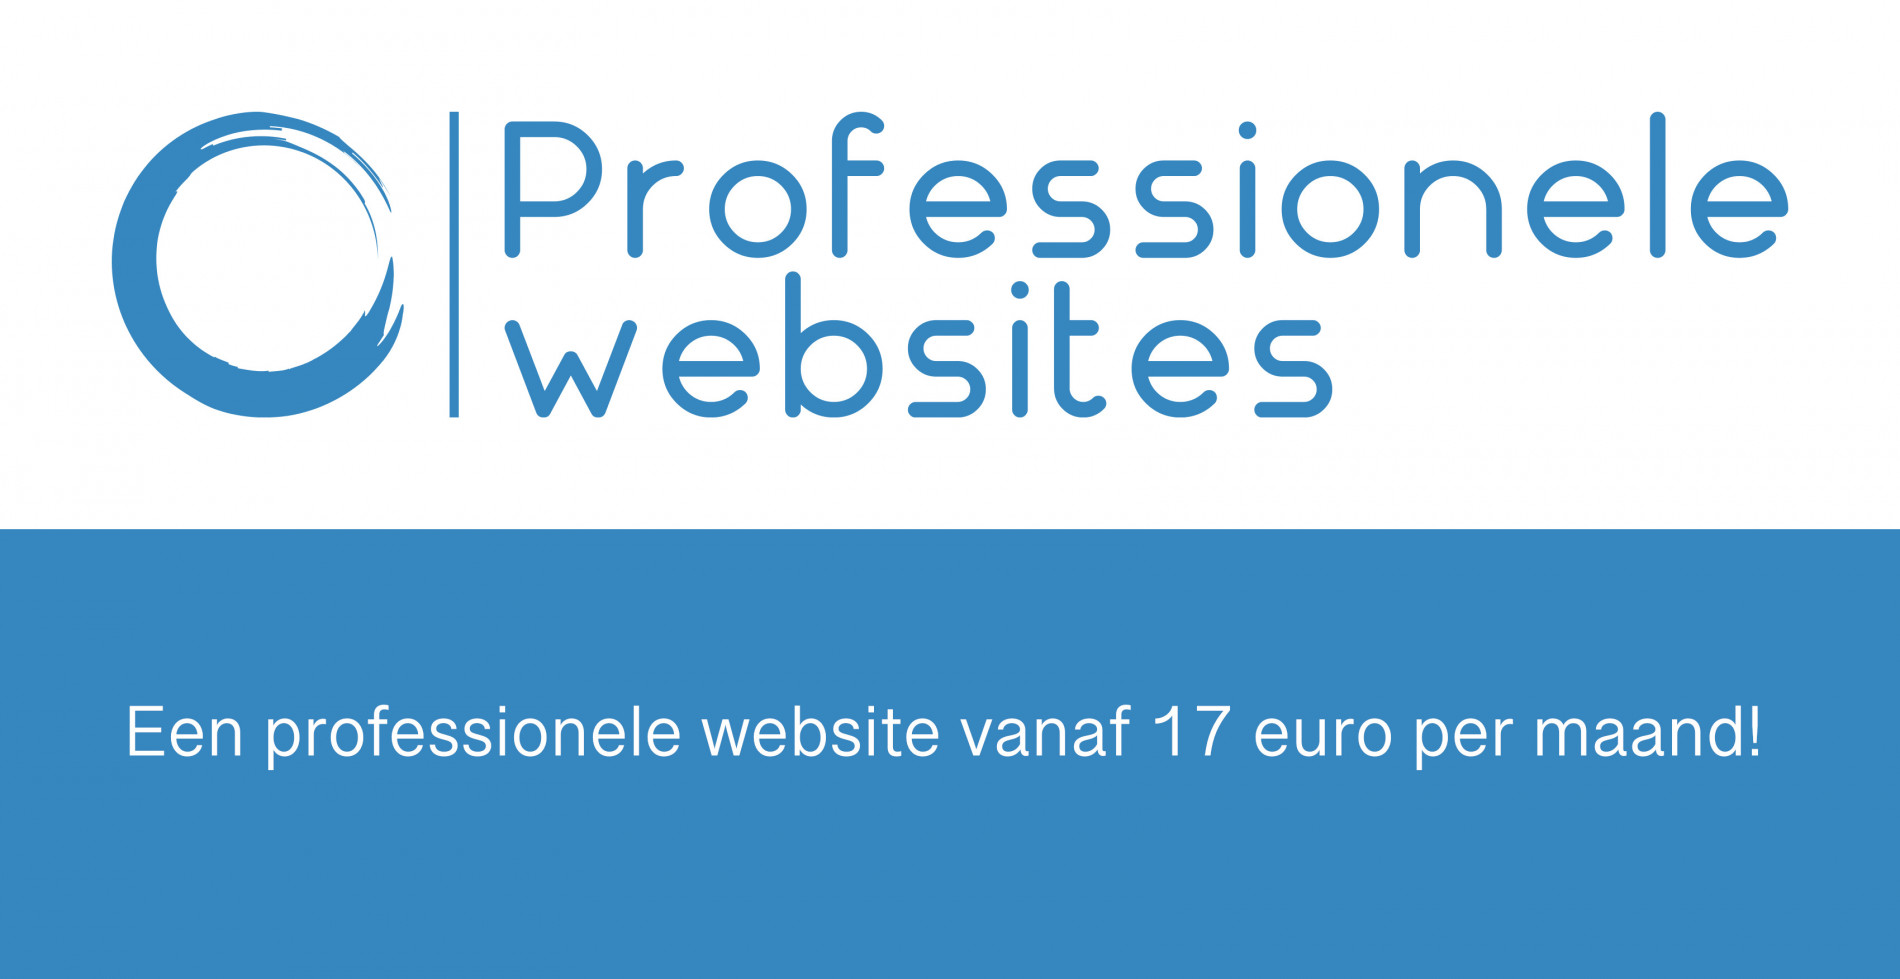 (c) Professionelewebsites.eu